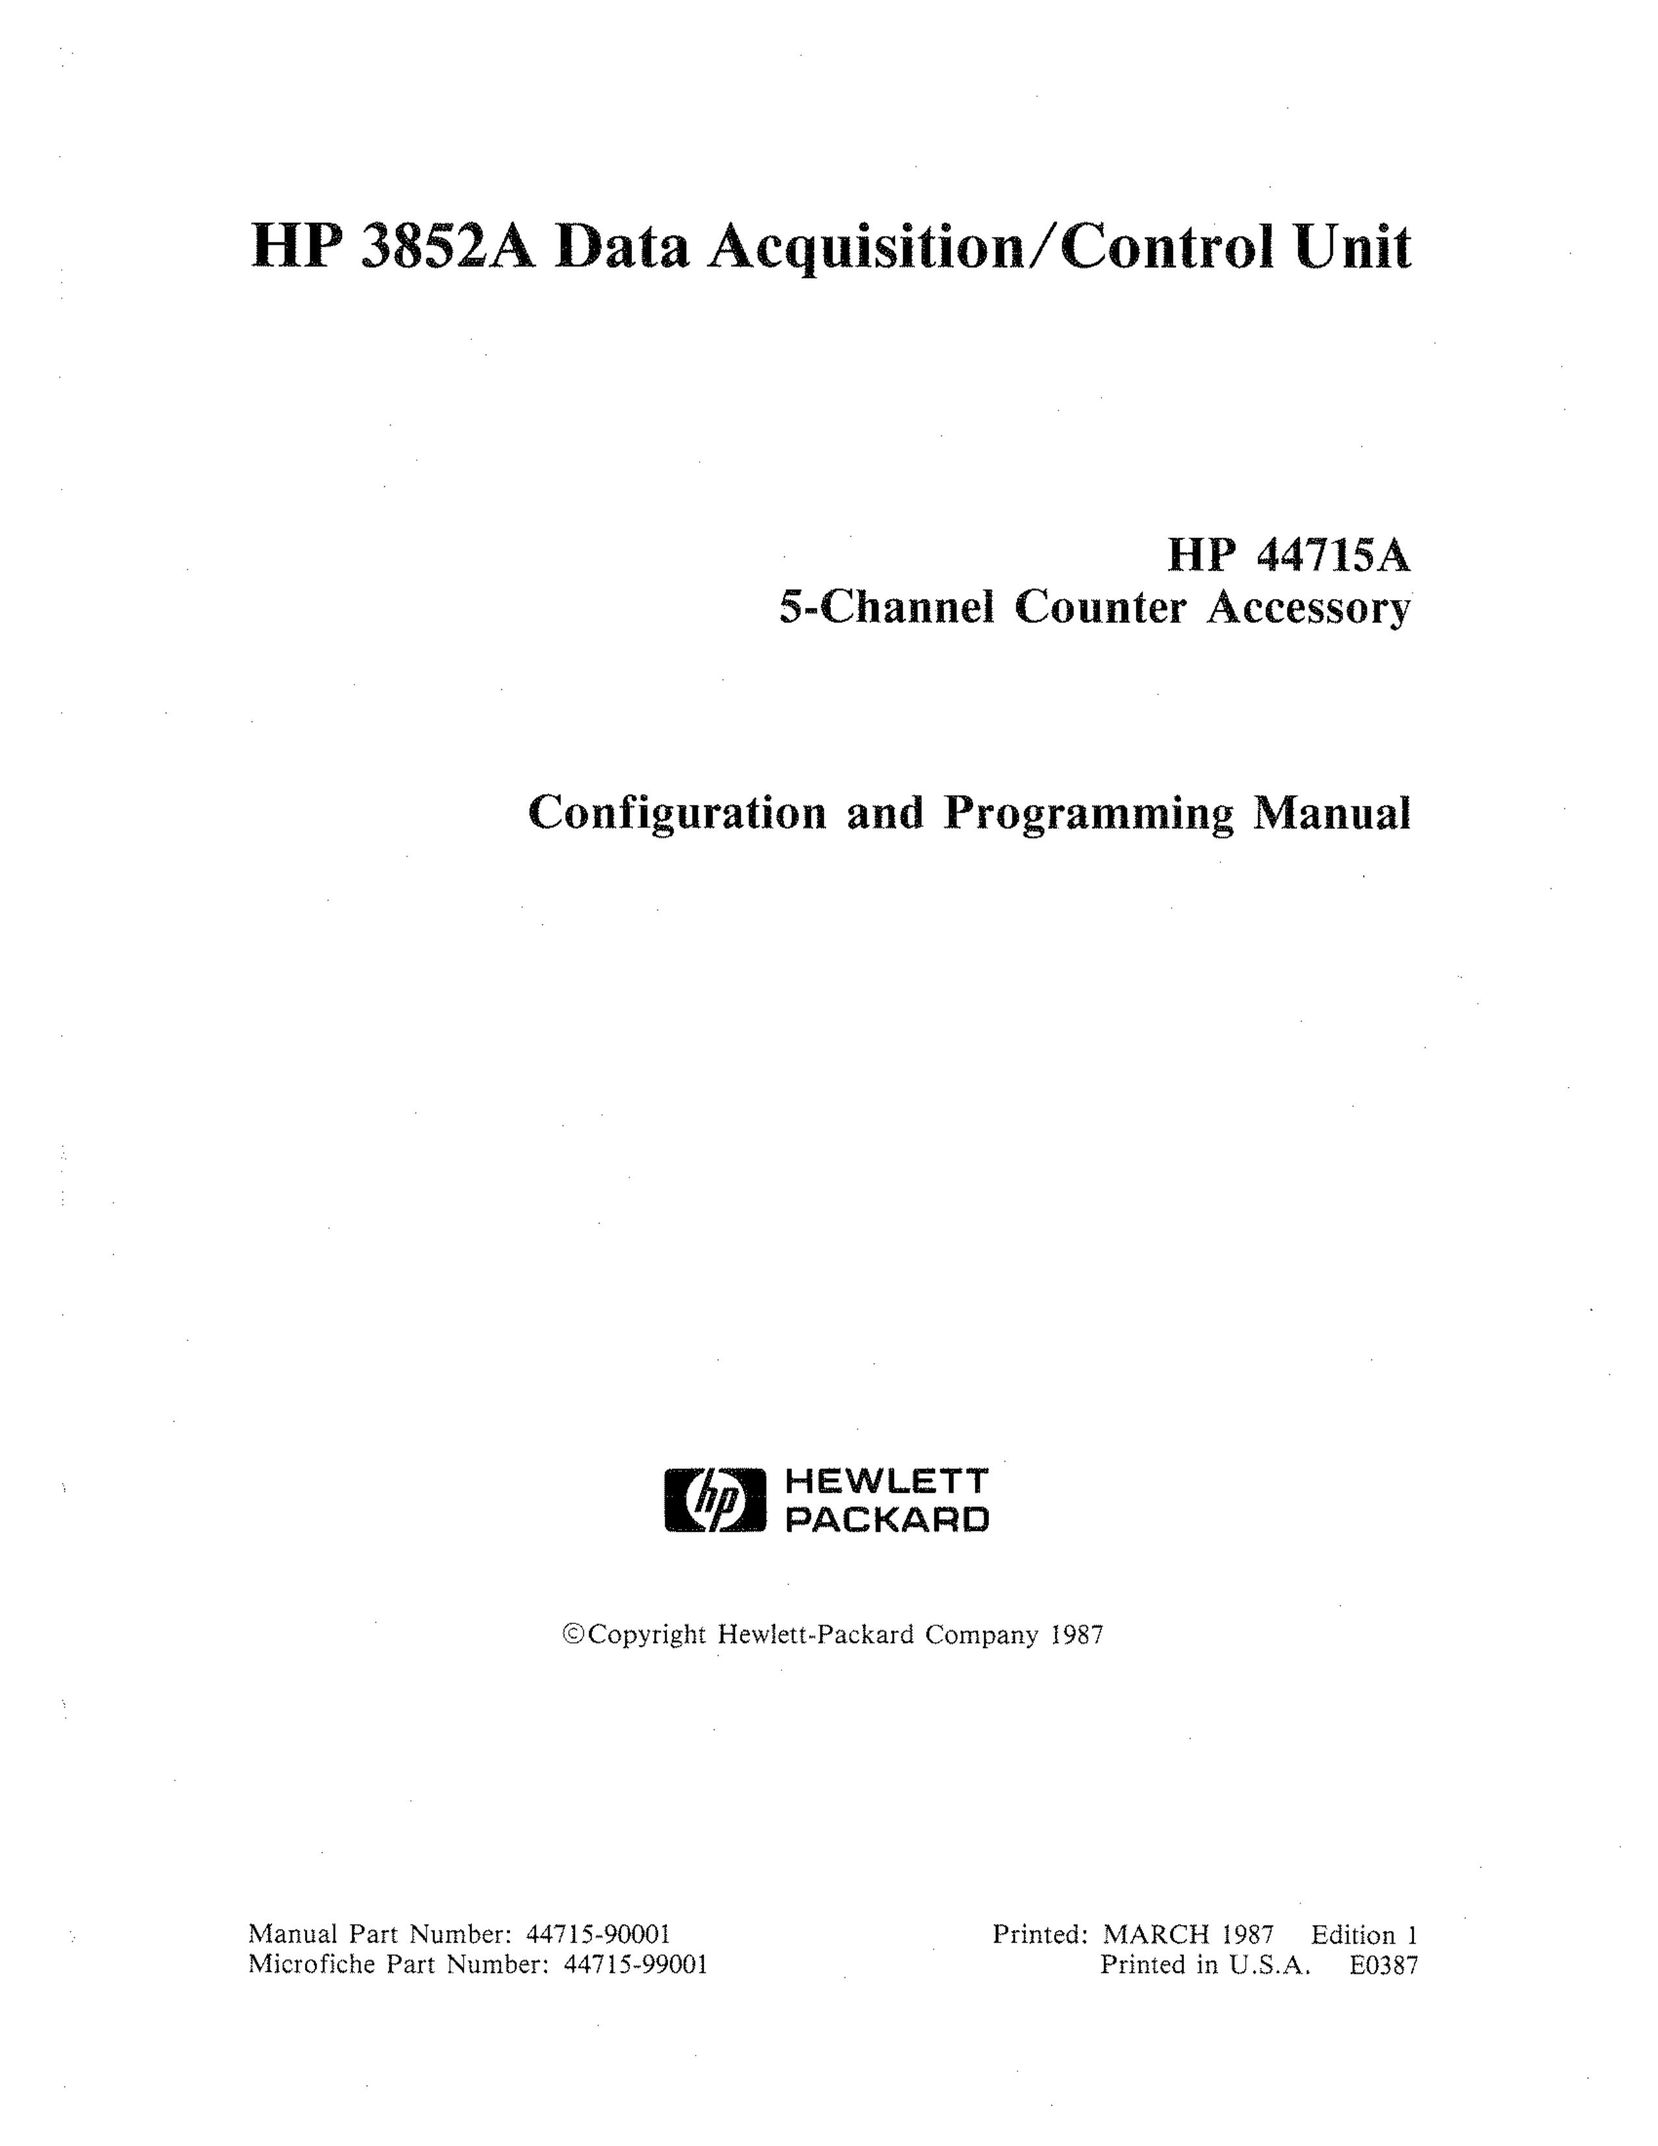 HP (Hewlett-Packard) HP 3852A Barcode Reader User Manual